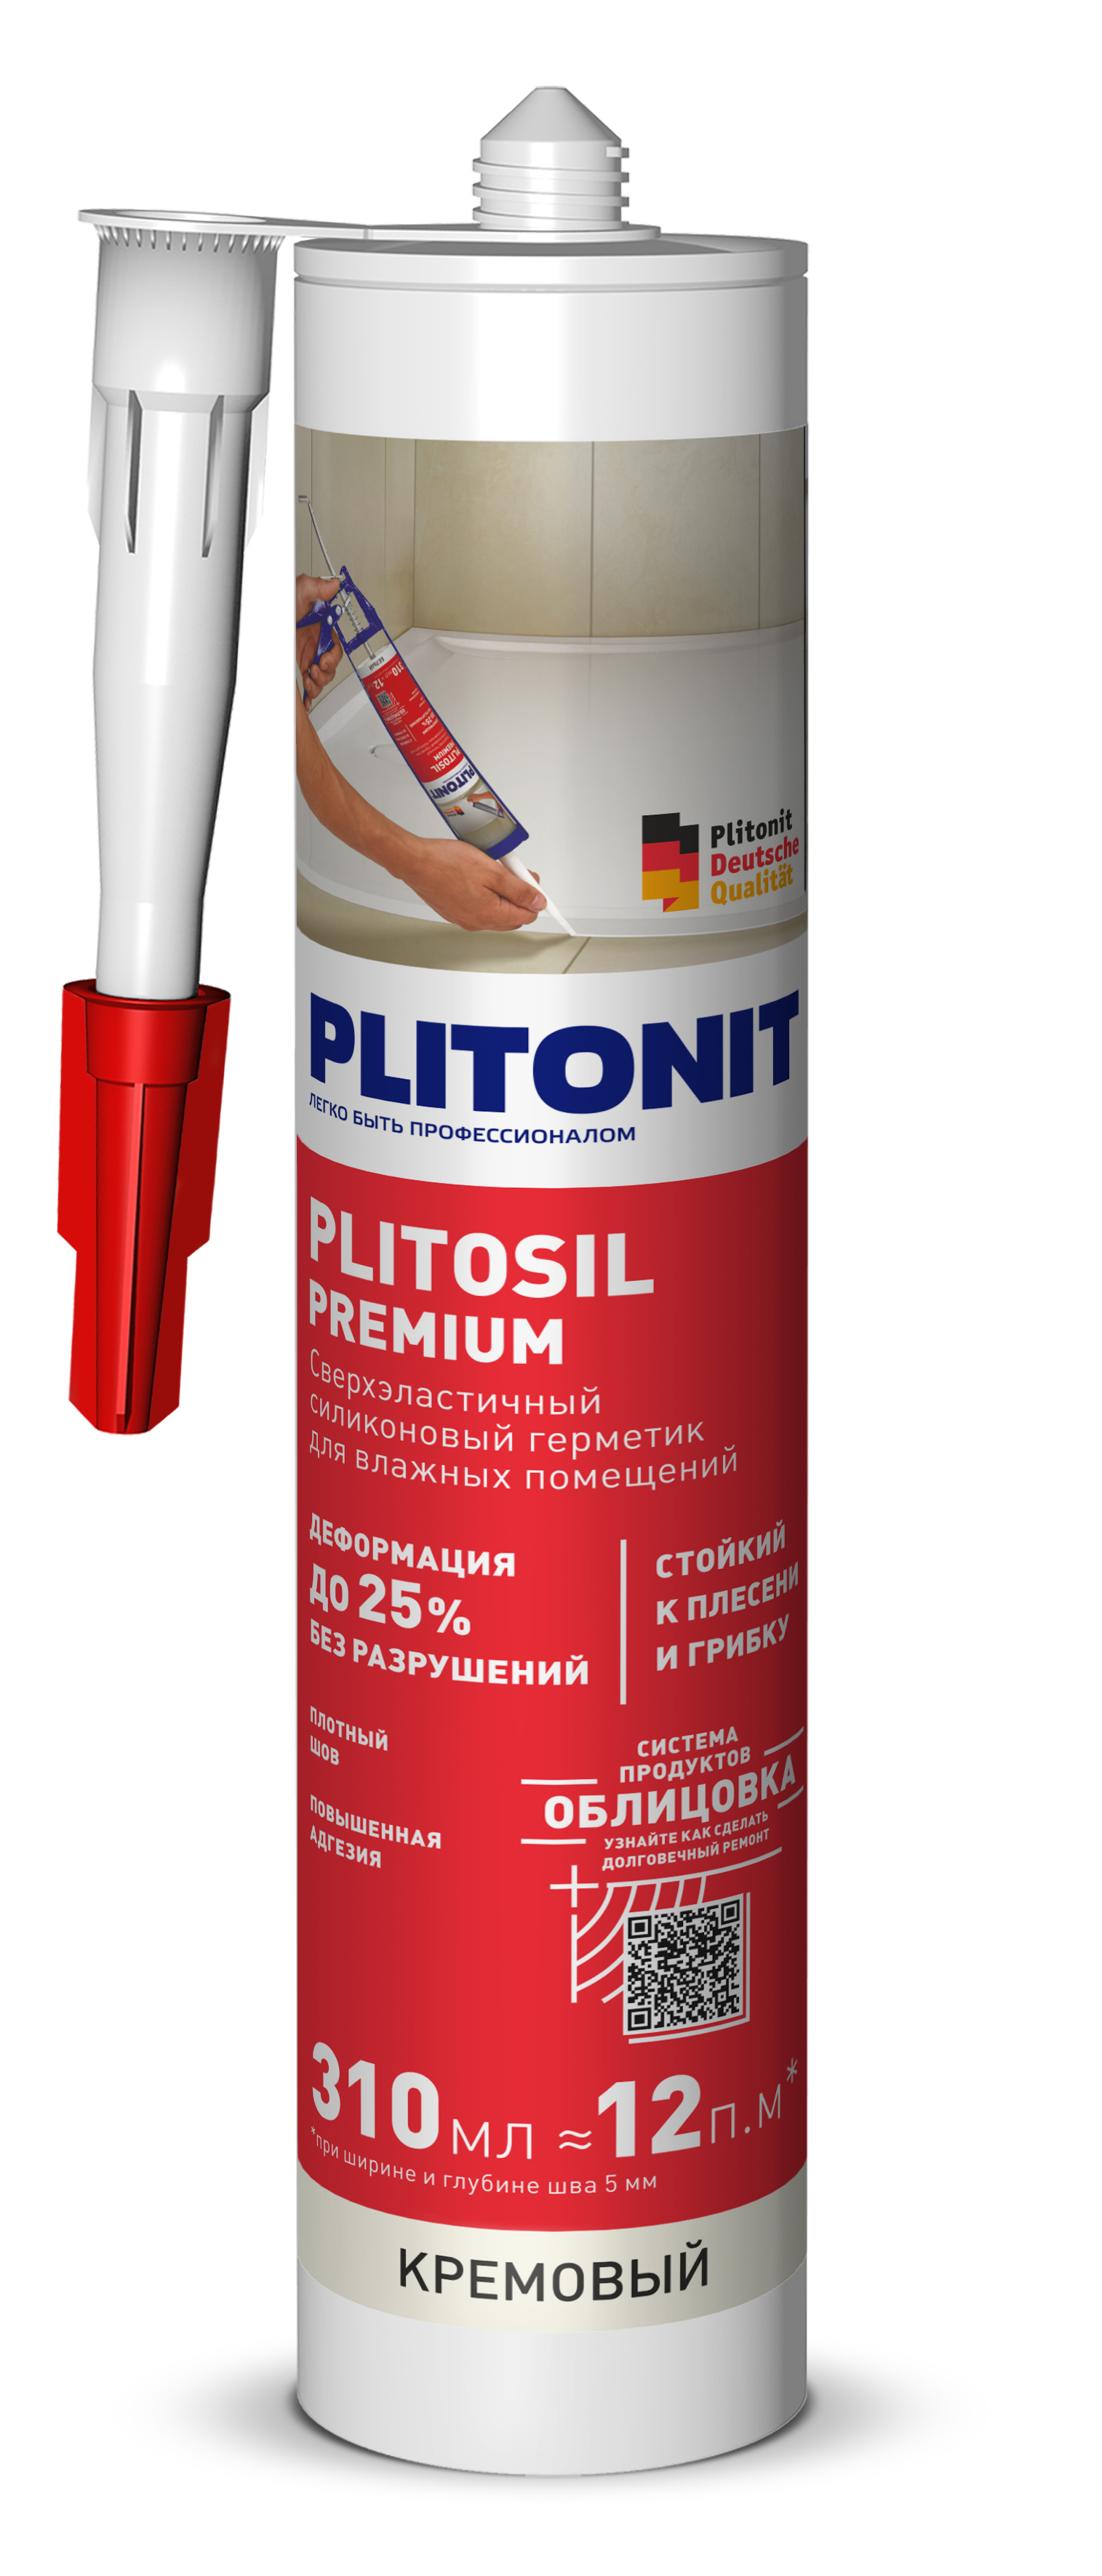 PLITONIT PlitoSil Premium Герметик сверхэластичный силиконовый для влажных помещений, кремовый 310 мл